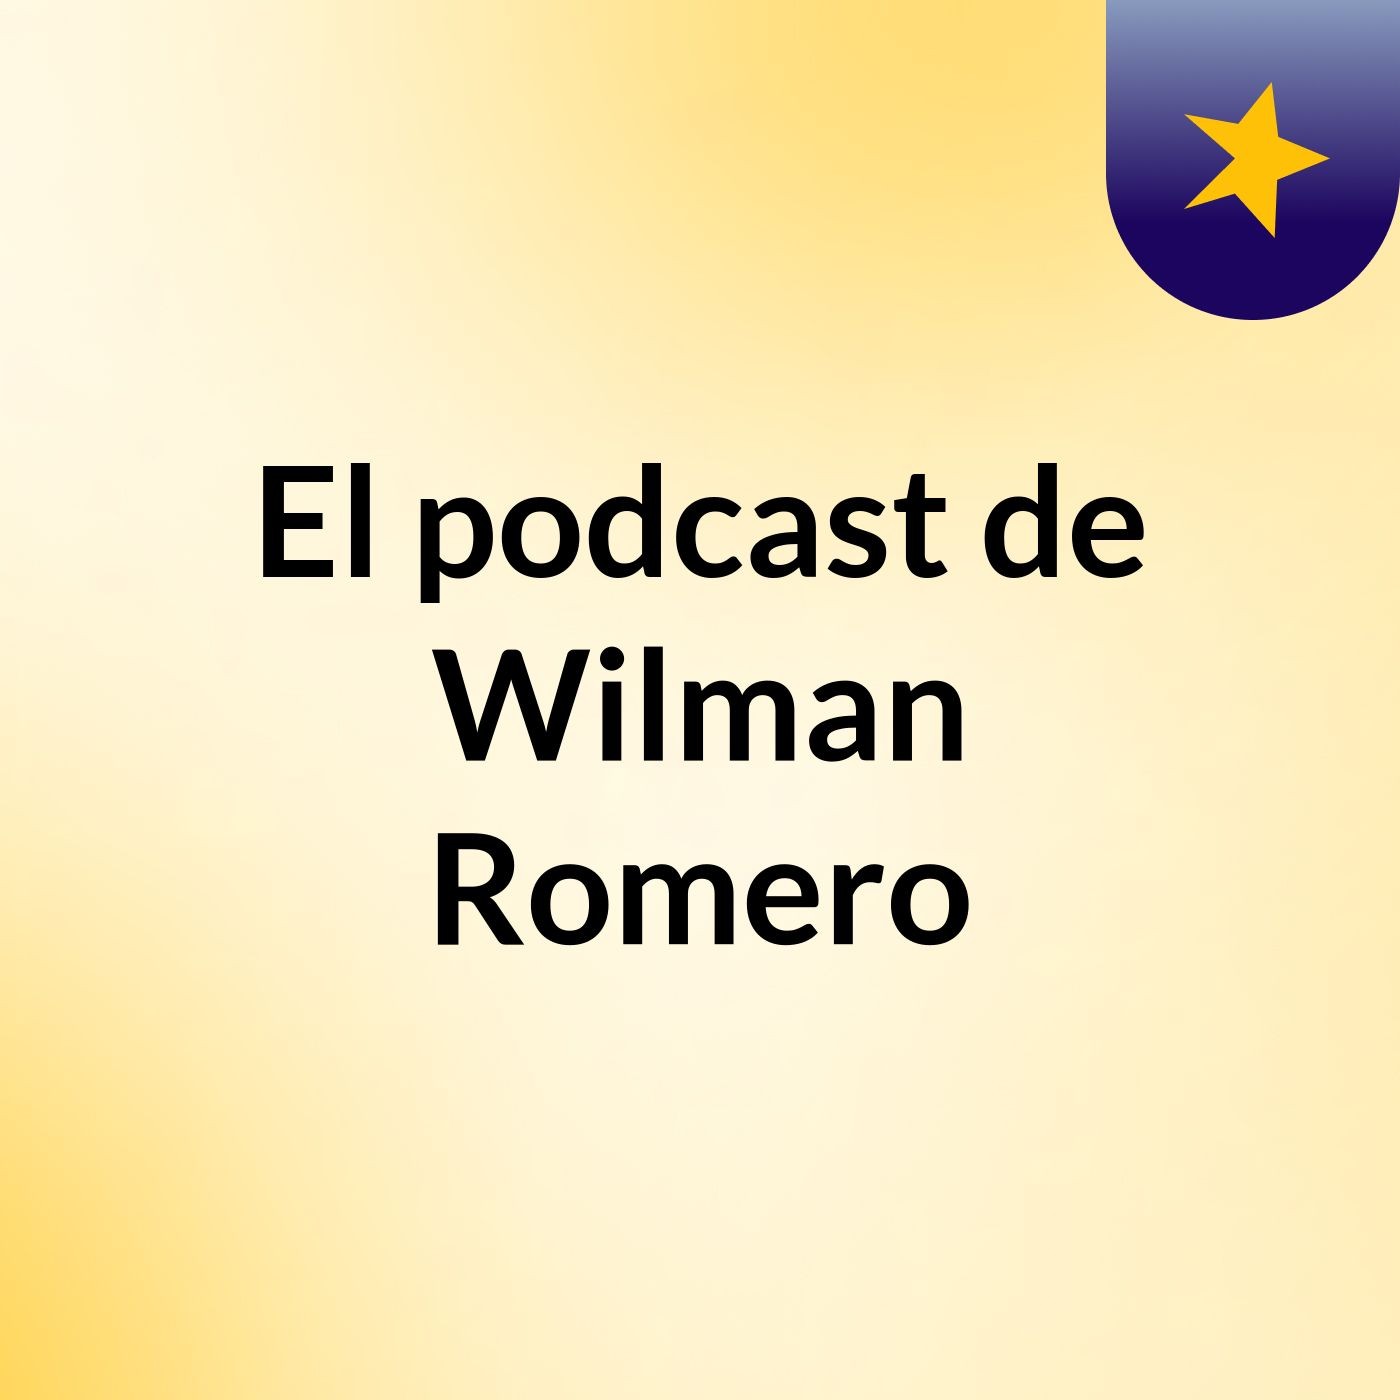 El podcast de Wilman Romero